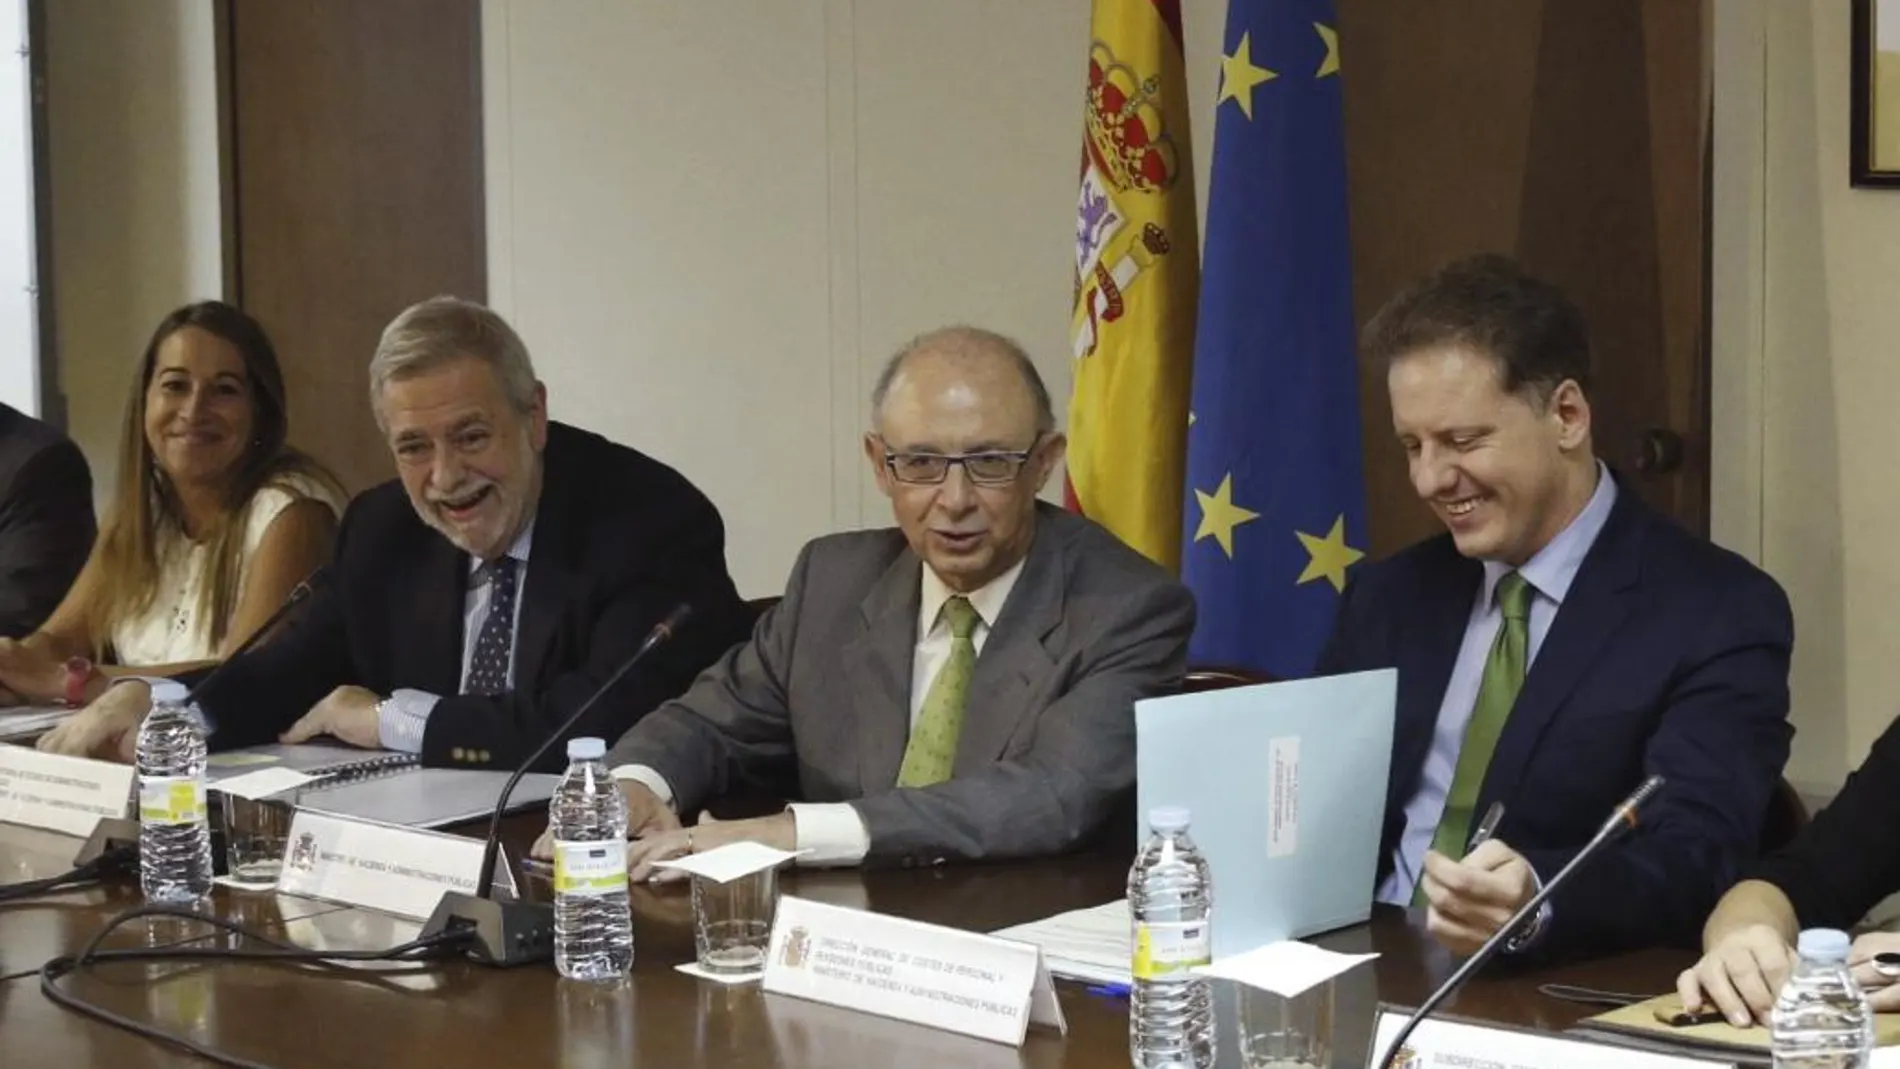 El ministro de Hacienda, Cristóbal Montoro y el secretario de Estado de Administraciones Públicas, Antonio Beteta, durante la reunión de la Mesa de la Administración General del Estado